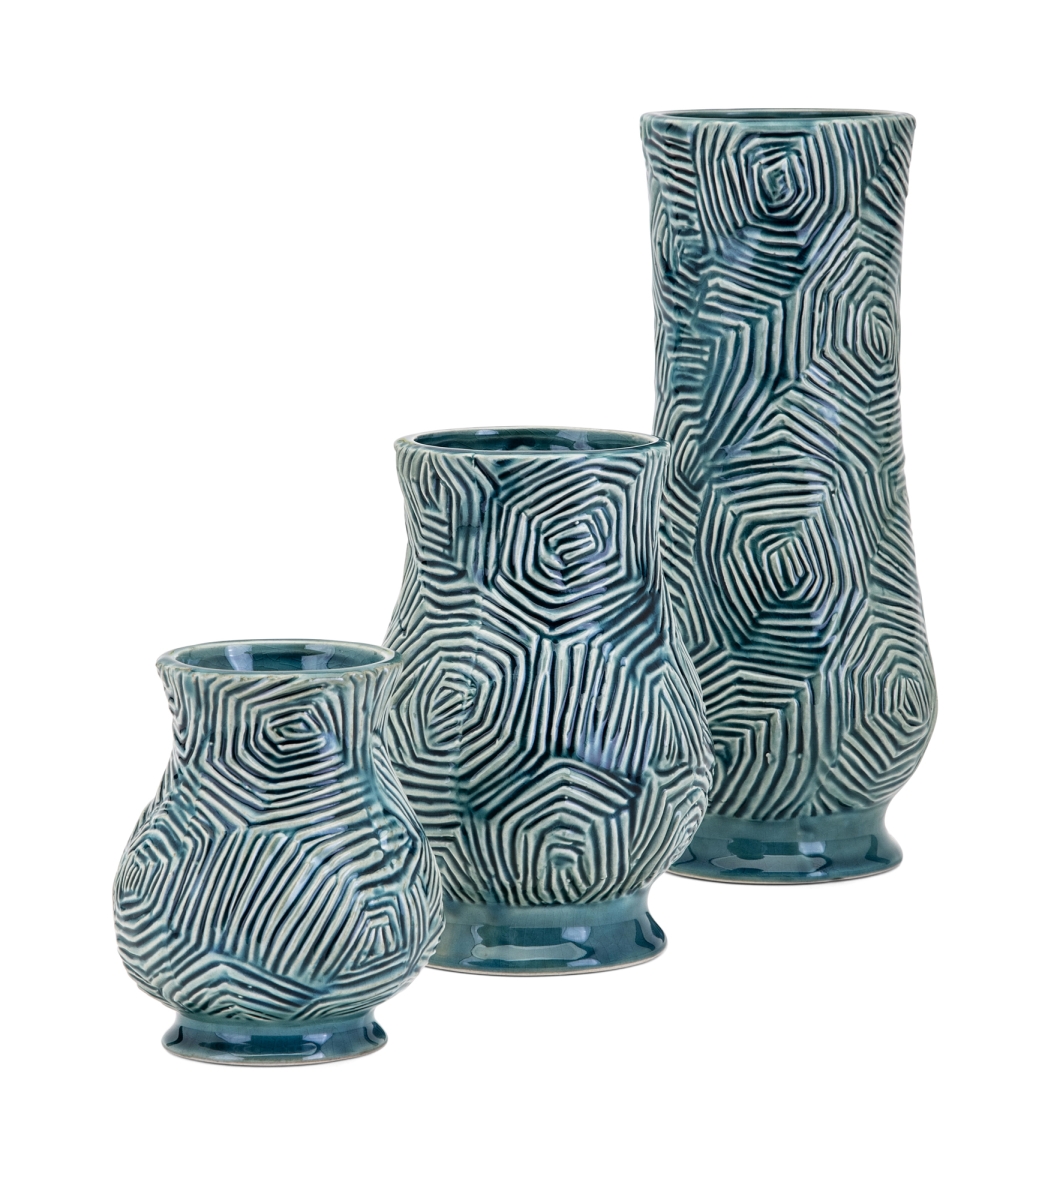 Imax 25536-3 Nebat Vases, Teal - Set Of 3